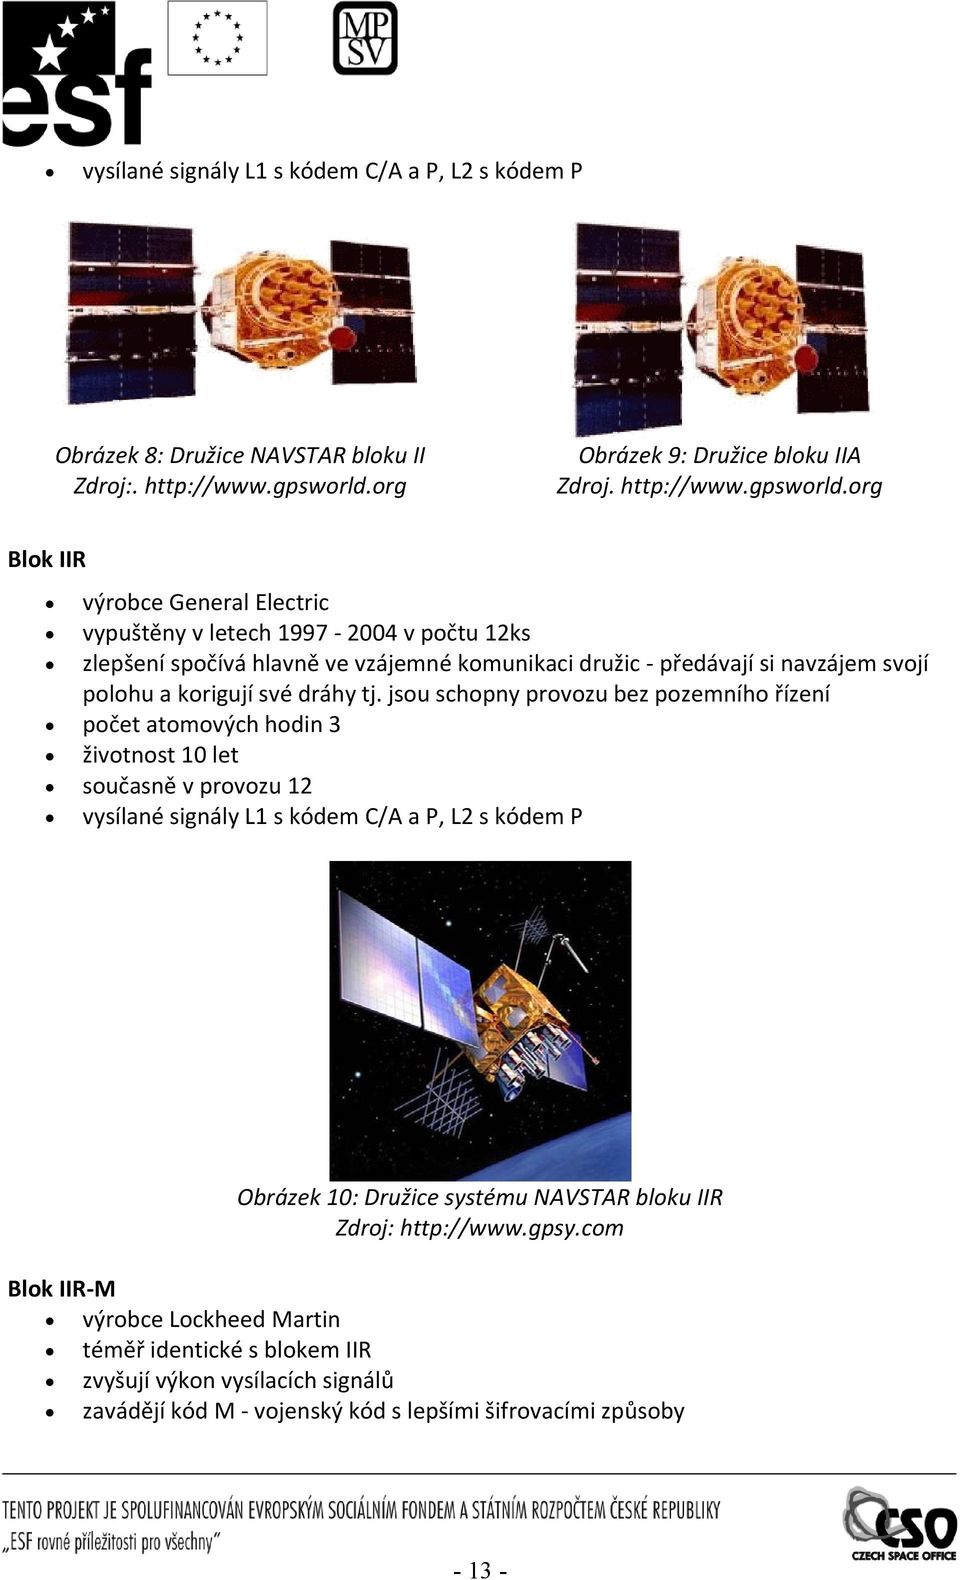 org Blok IIR výrobce General Elecric vypušěny v leech 1997 2004 v poču 12ks zlepšení spočívá hlavně ve vzájemné komunikaci družic předávají si navzájem svojí polohu a korigují své